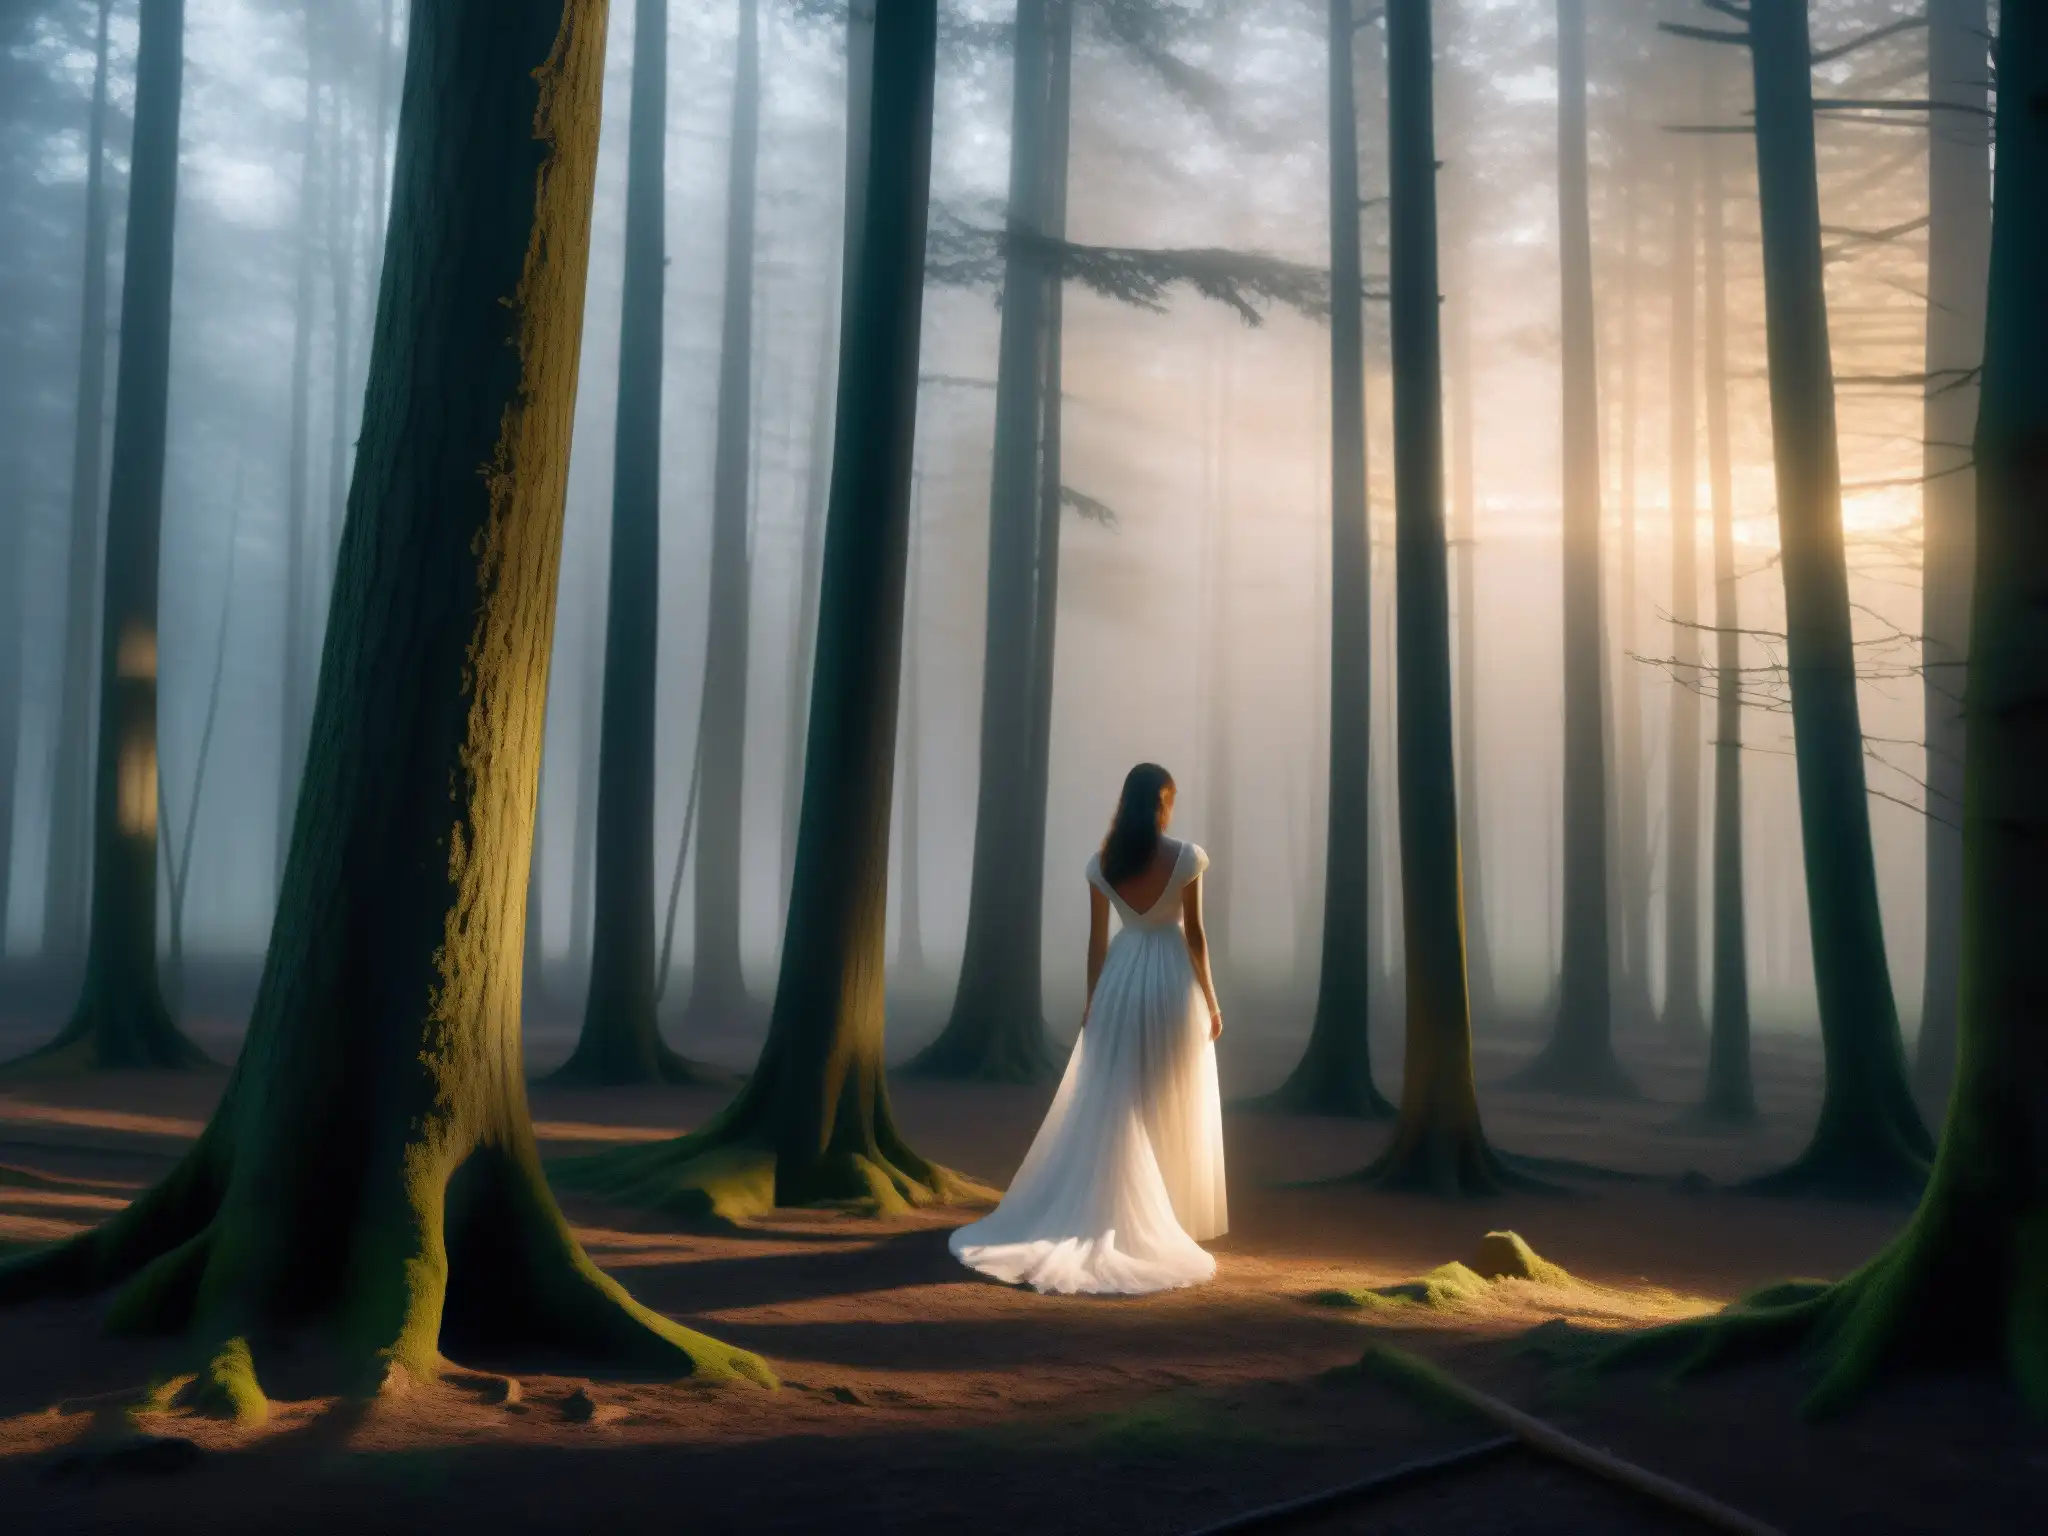 Figura etérea en vestido blanco entre árboles en bosque brumoso al atardecer, evocando misterio y leyendas de apariciones mujer blanco